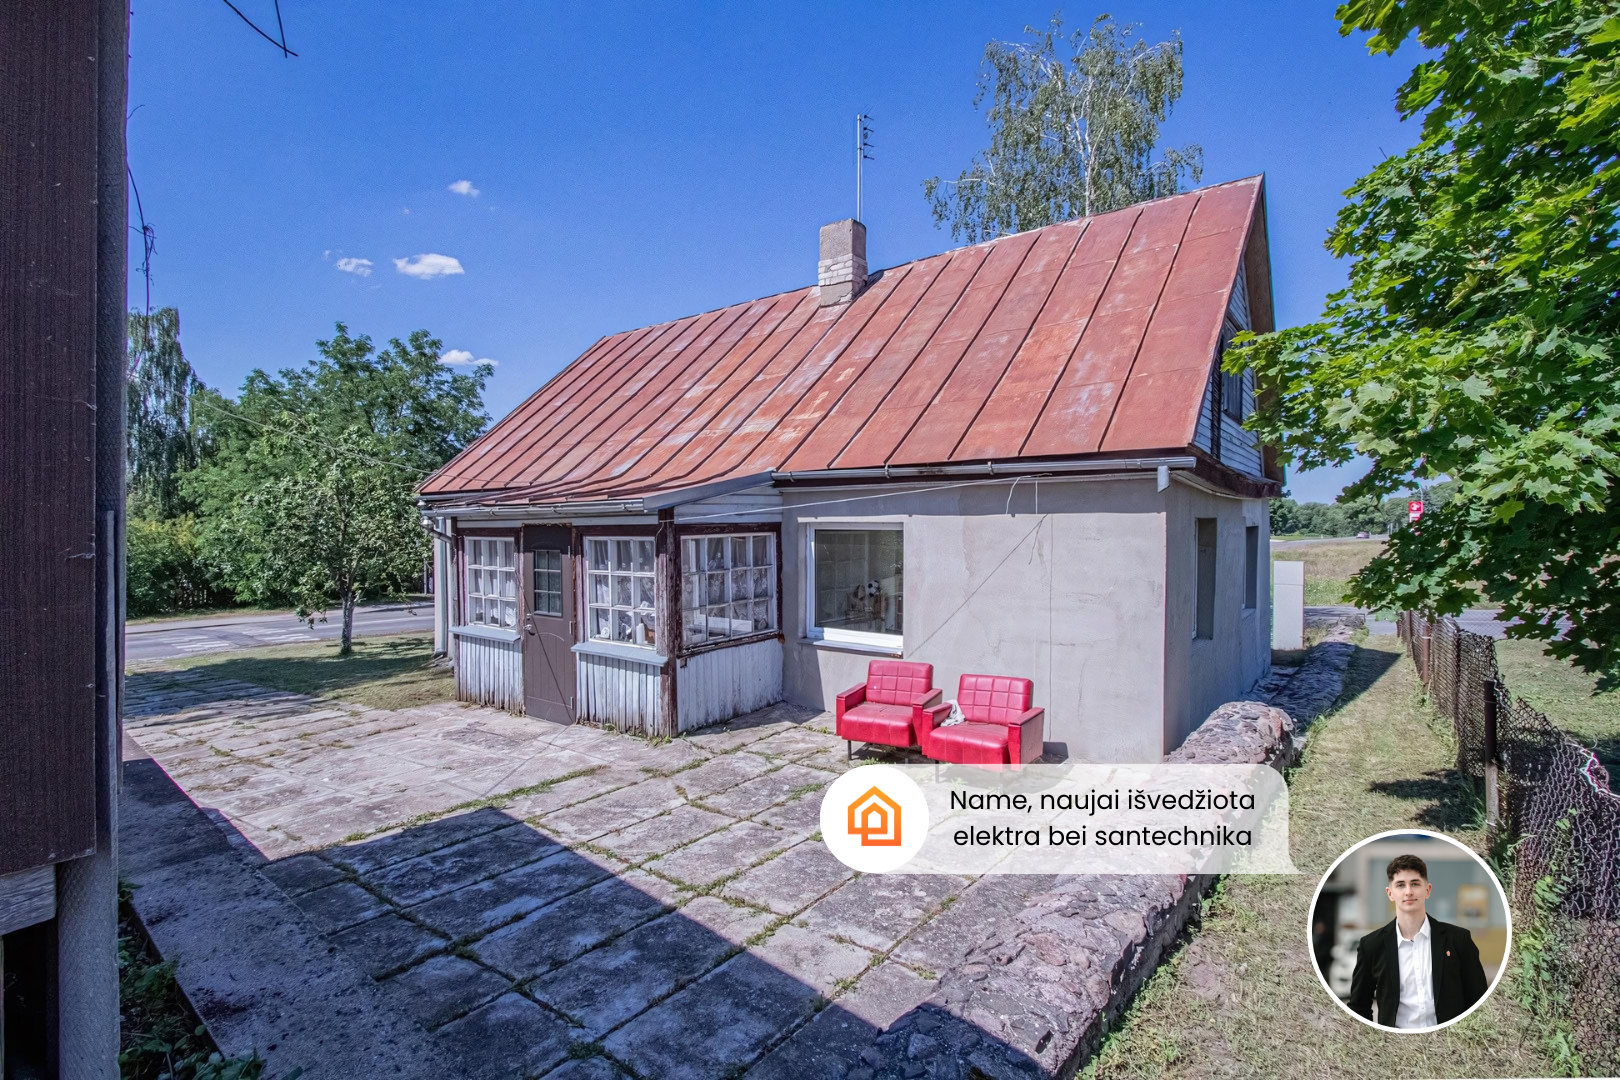 Parduodamas prižiūrėtas namas su 7,07 arų žemės sklypu Panevėžio r., Krekenava, Tilto g. 20